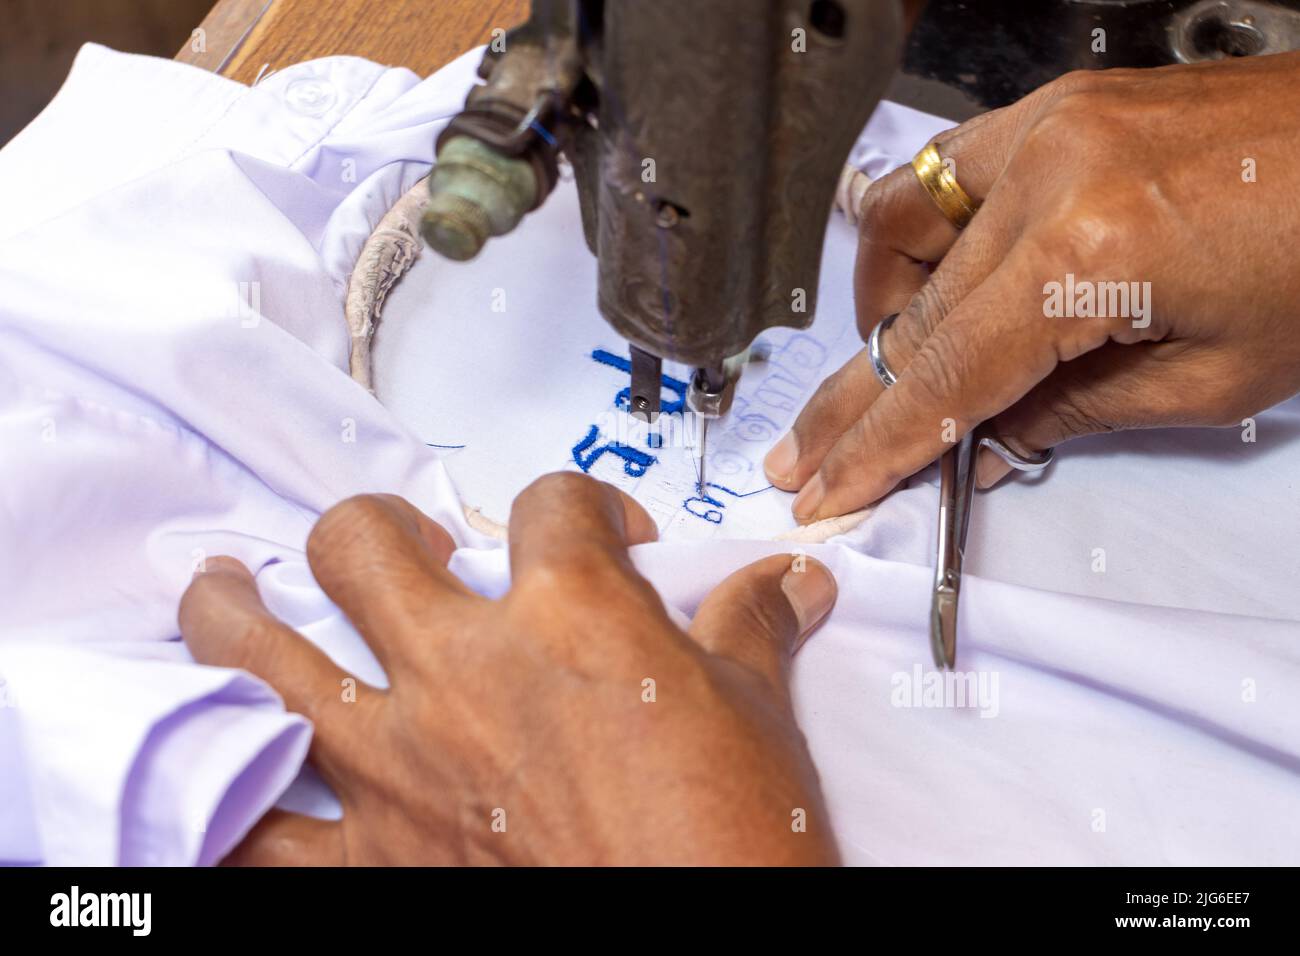 Broder des numéros thaïlandais sur une chemise d'étudiant sur une vieille machine à coudre Banque D'Images